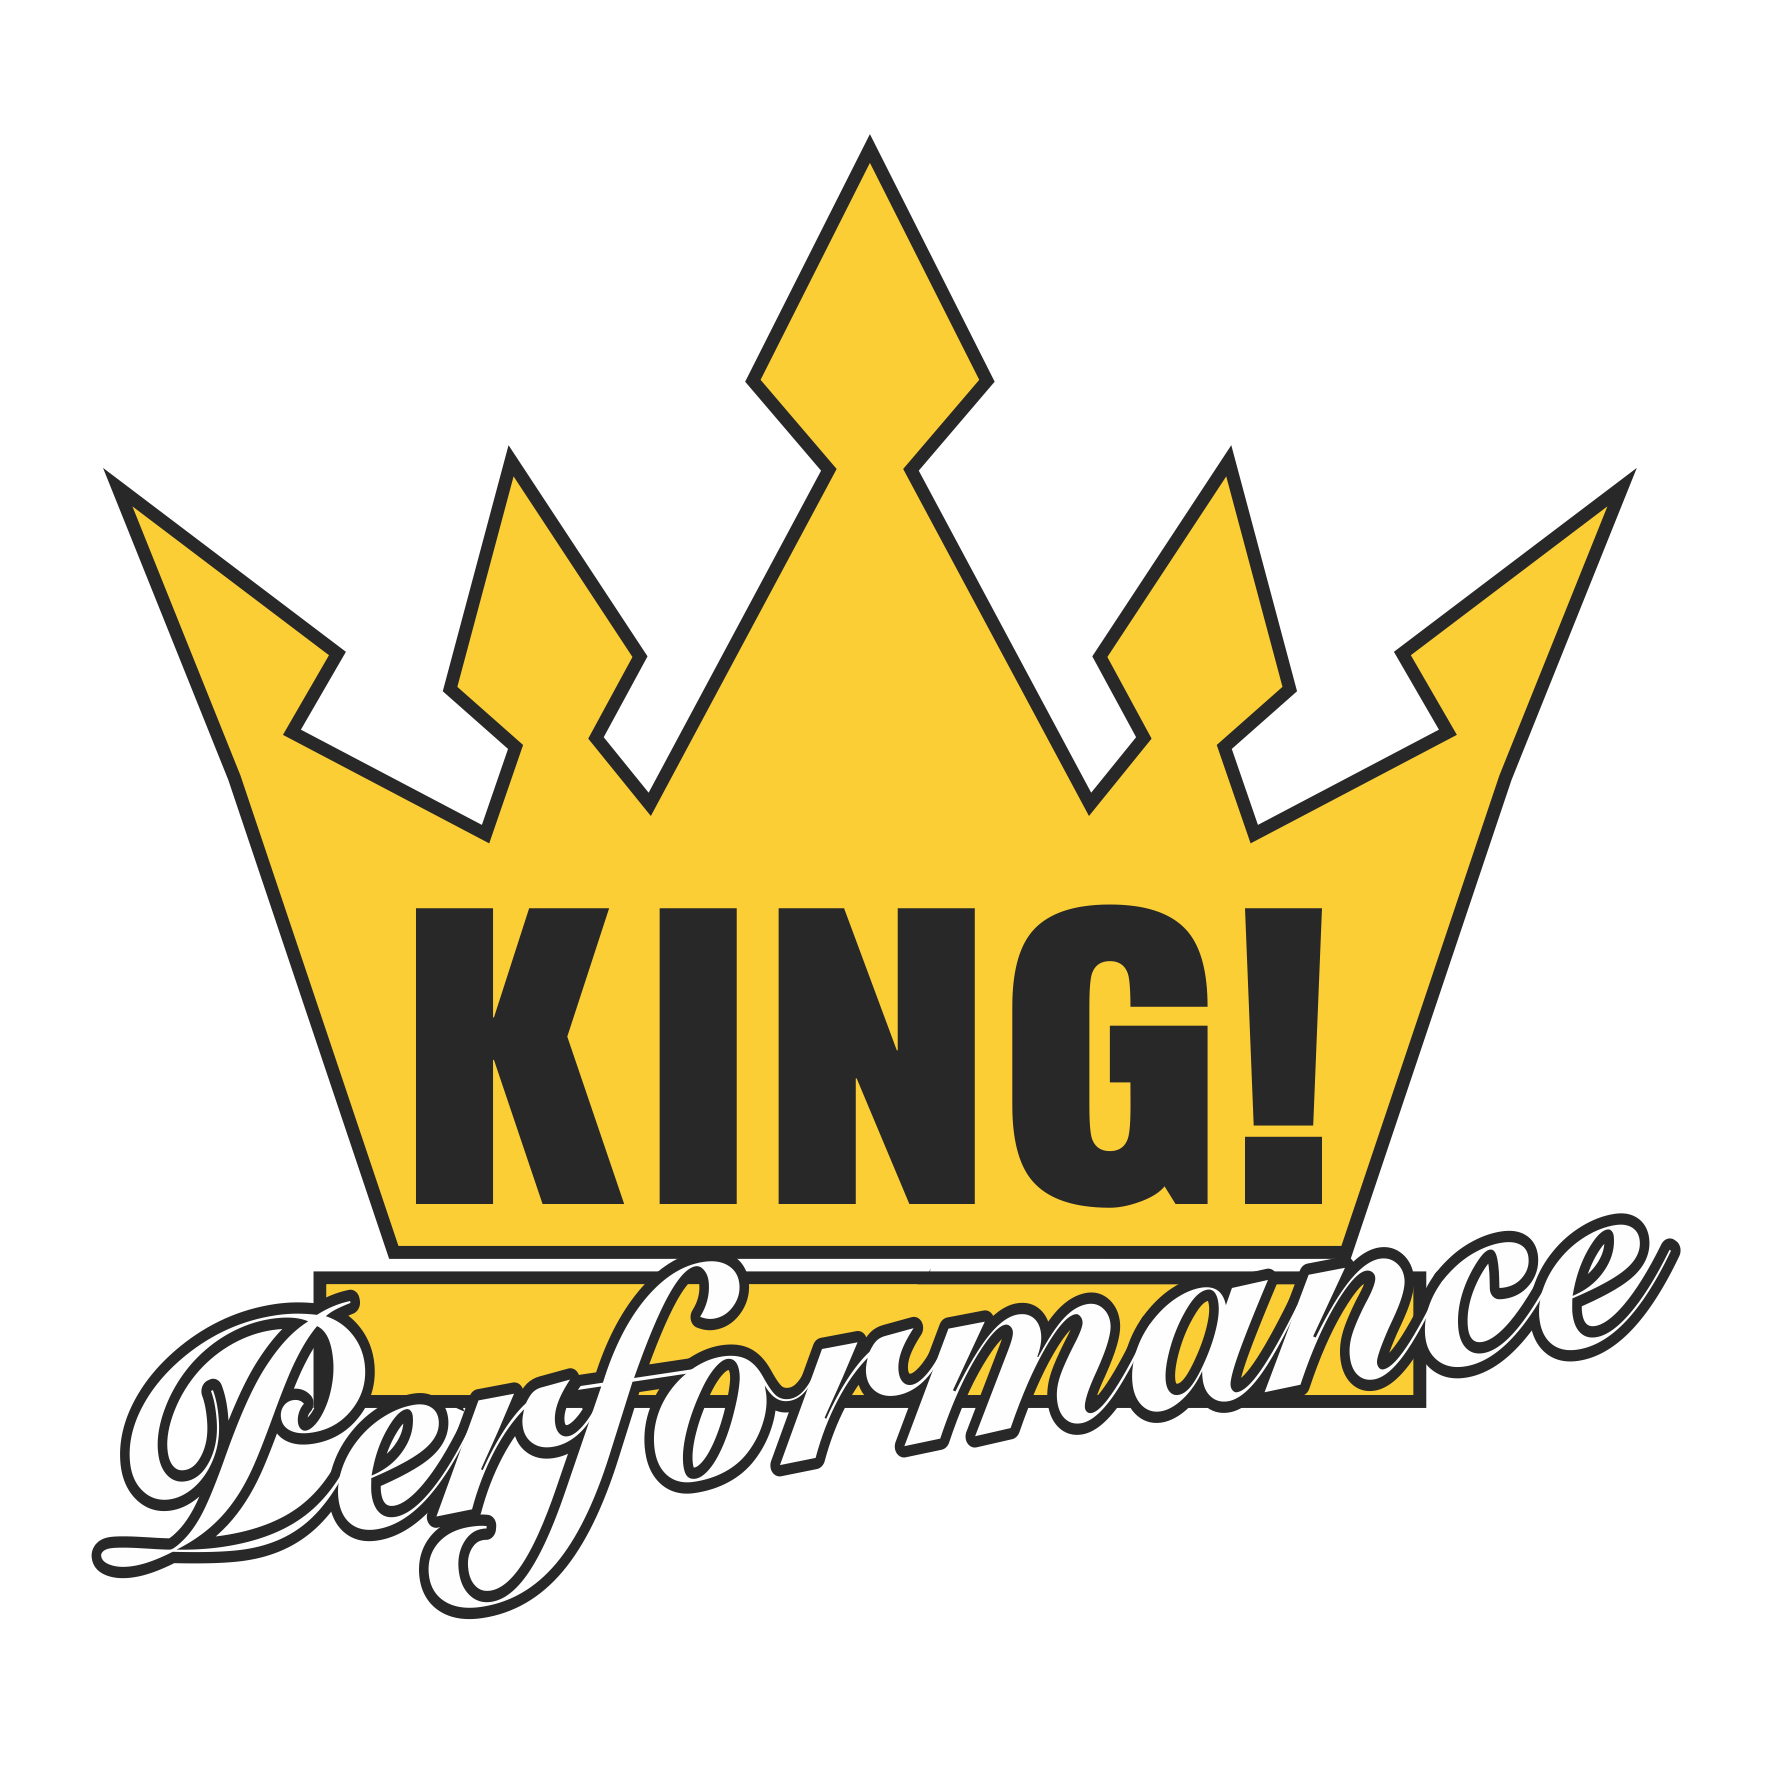 King Performance LOGO 02